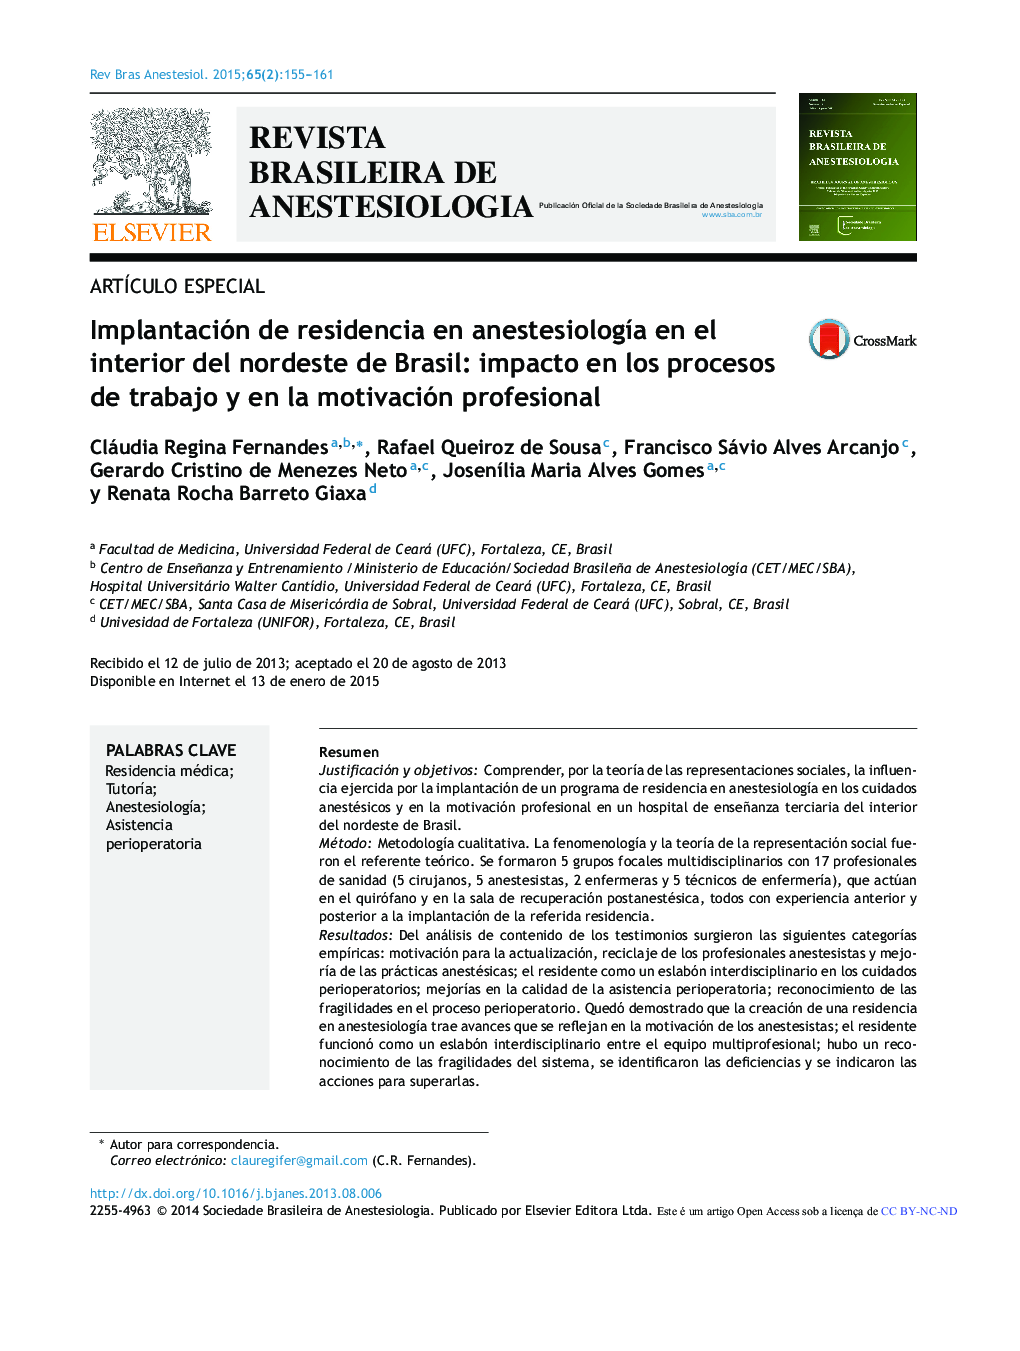 Implantación de residencia en anestesiología en el interior del nordeste de Brasil: impacto en los procesos de trabajo y en la motivación profesional